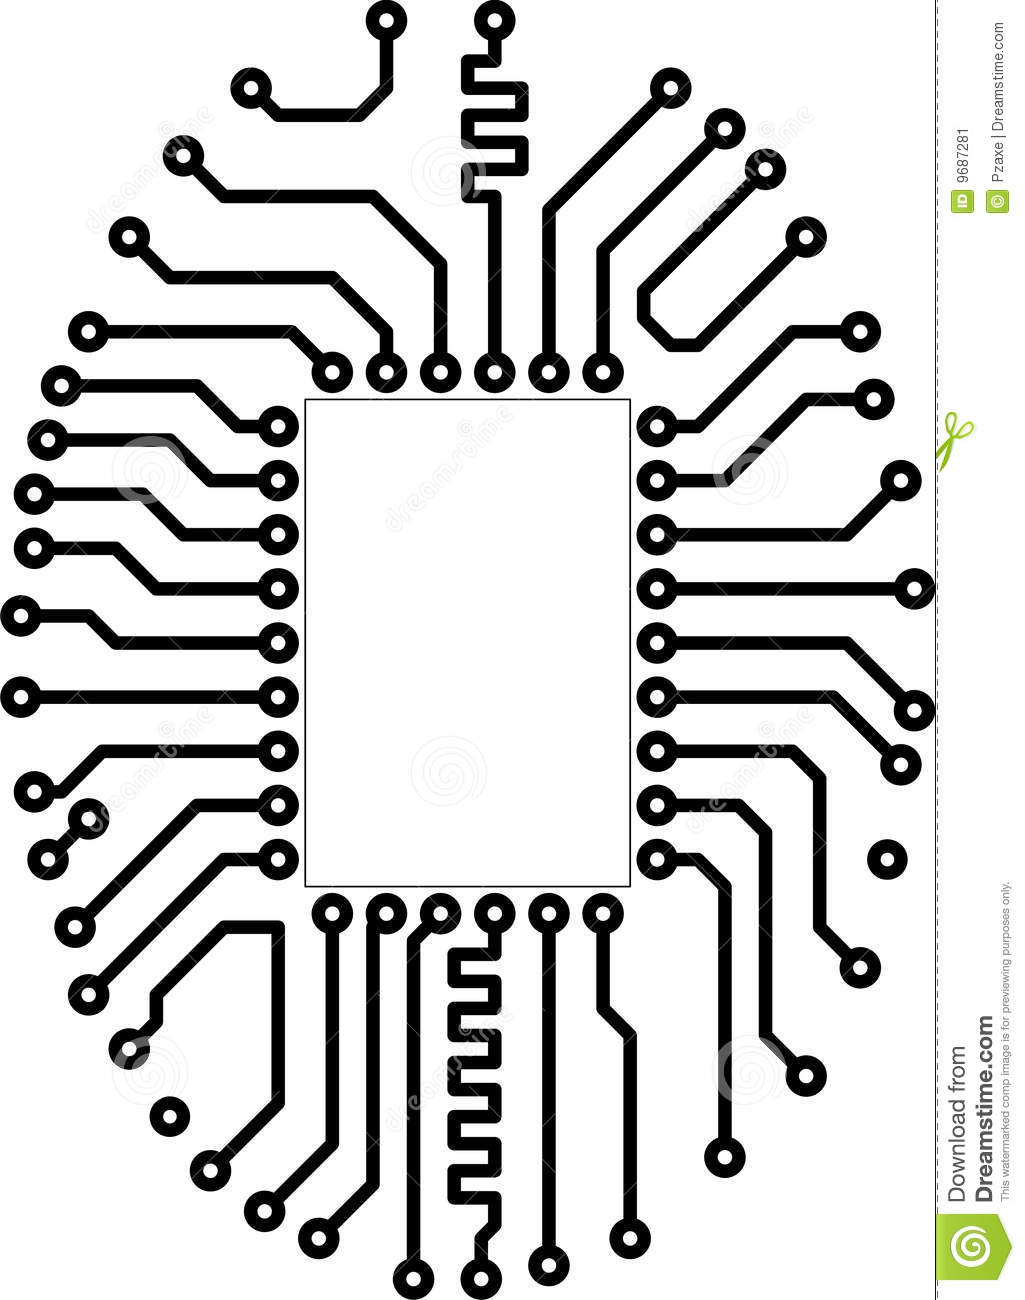 Circuit board - csp13309760